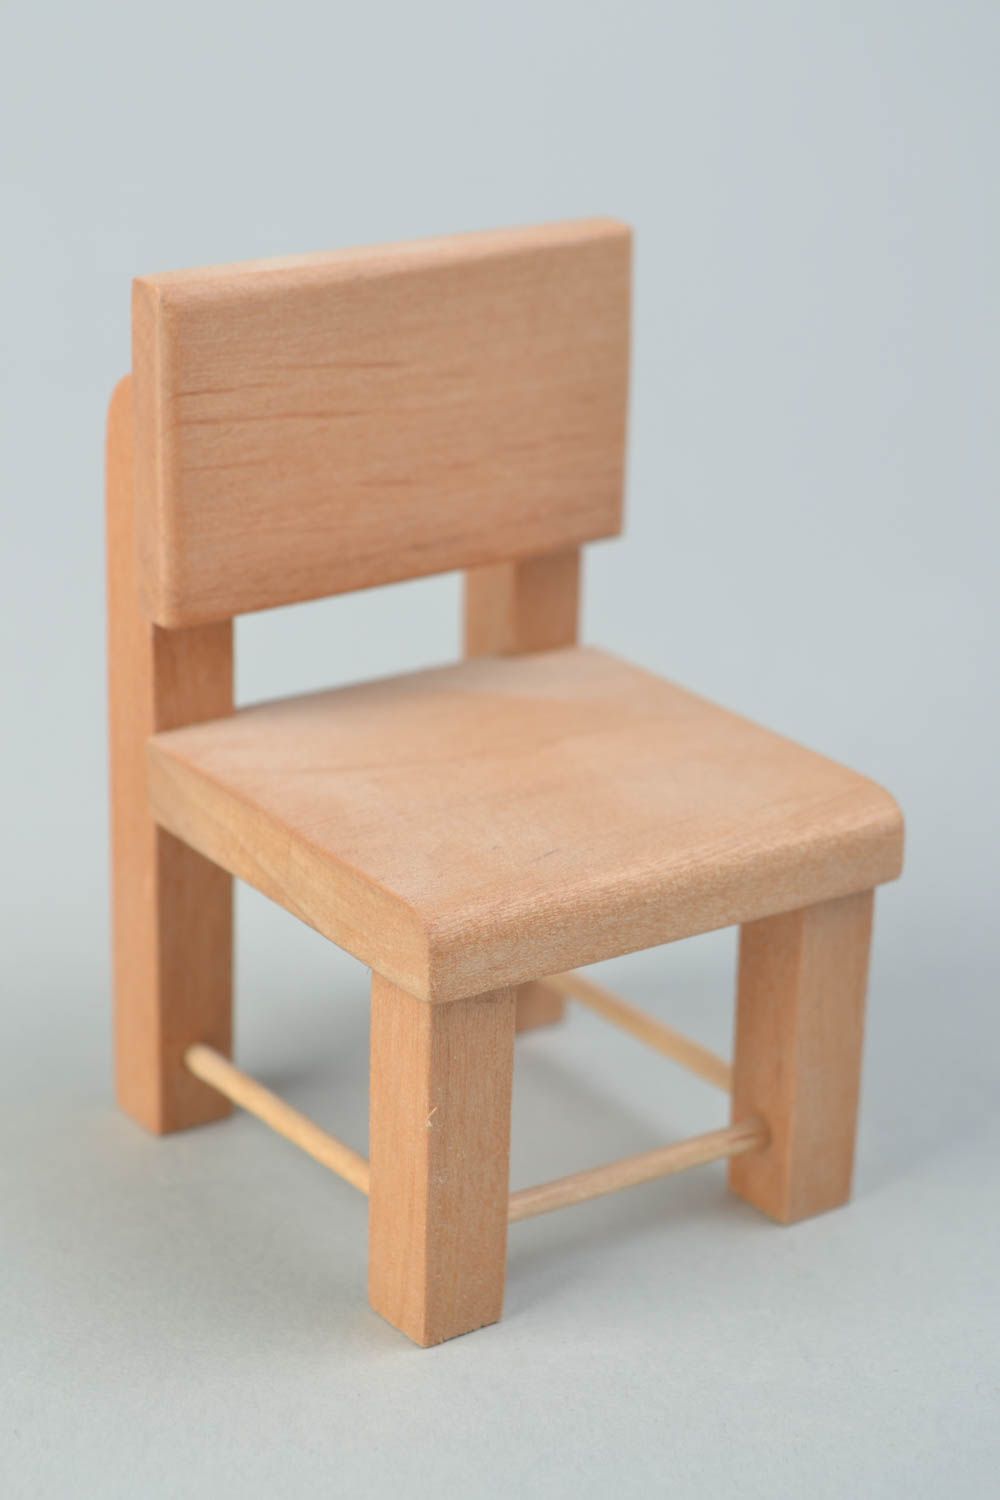 Puppenmöbel aus Holz Rohling zum Bemalen und für Decoupage handmade Stuhl foto 1